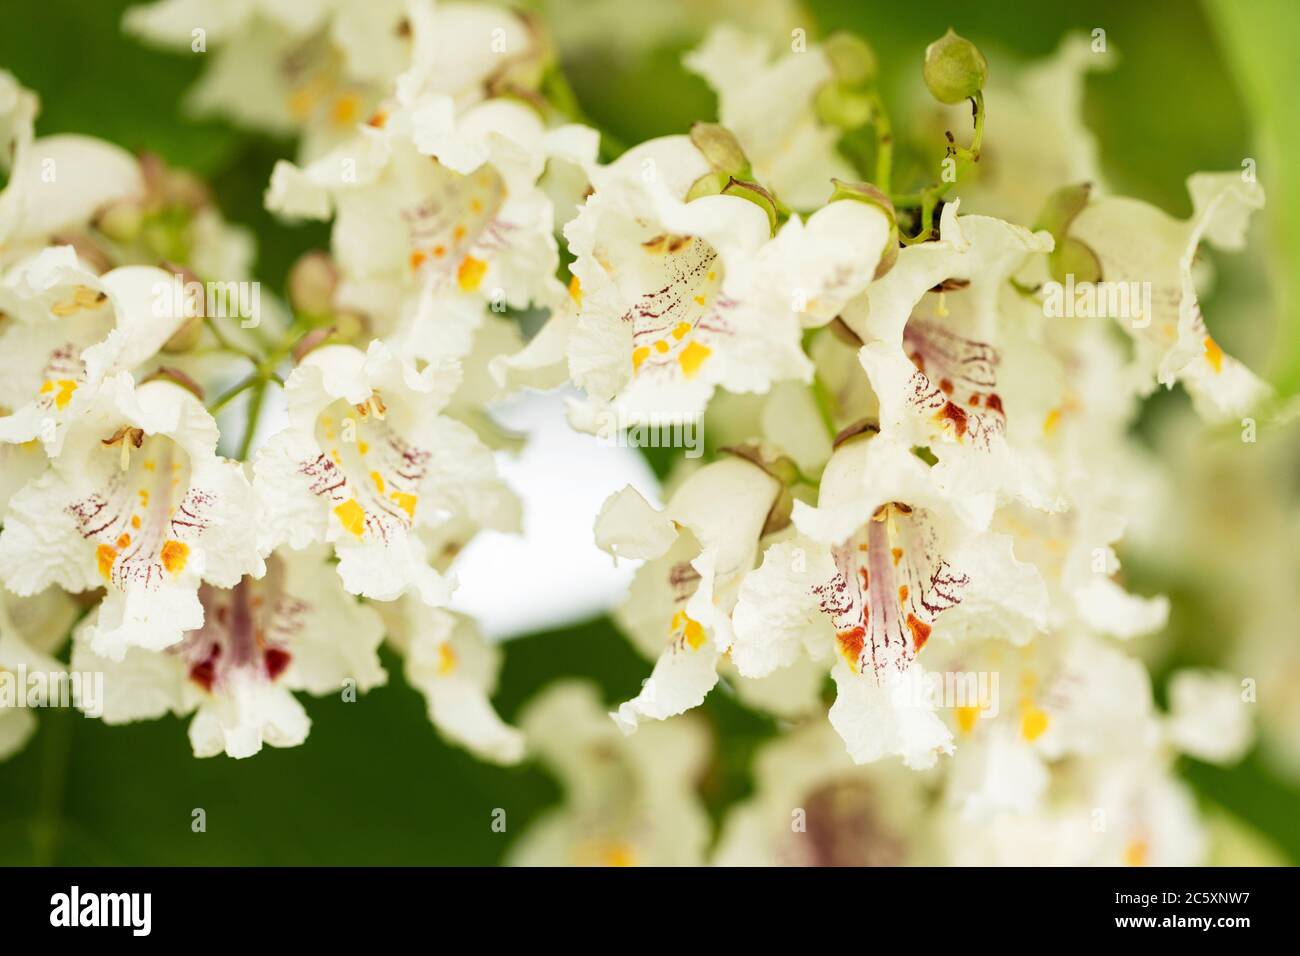 Flores en un árbol de Catalpa bignonioides, también conocido como catpa meridional, cigarre, y árbol de frijol indio, nativo del sureste de los Estados Unidos. Foto de stock